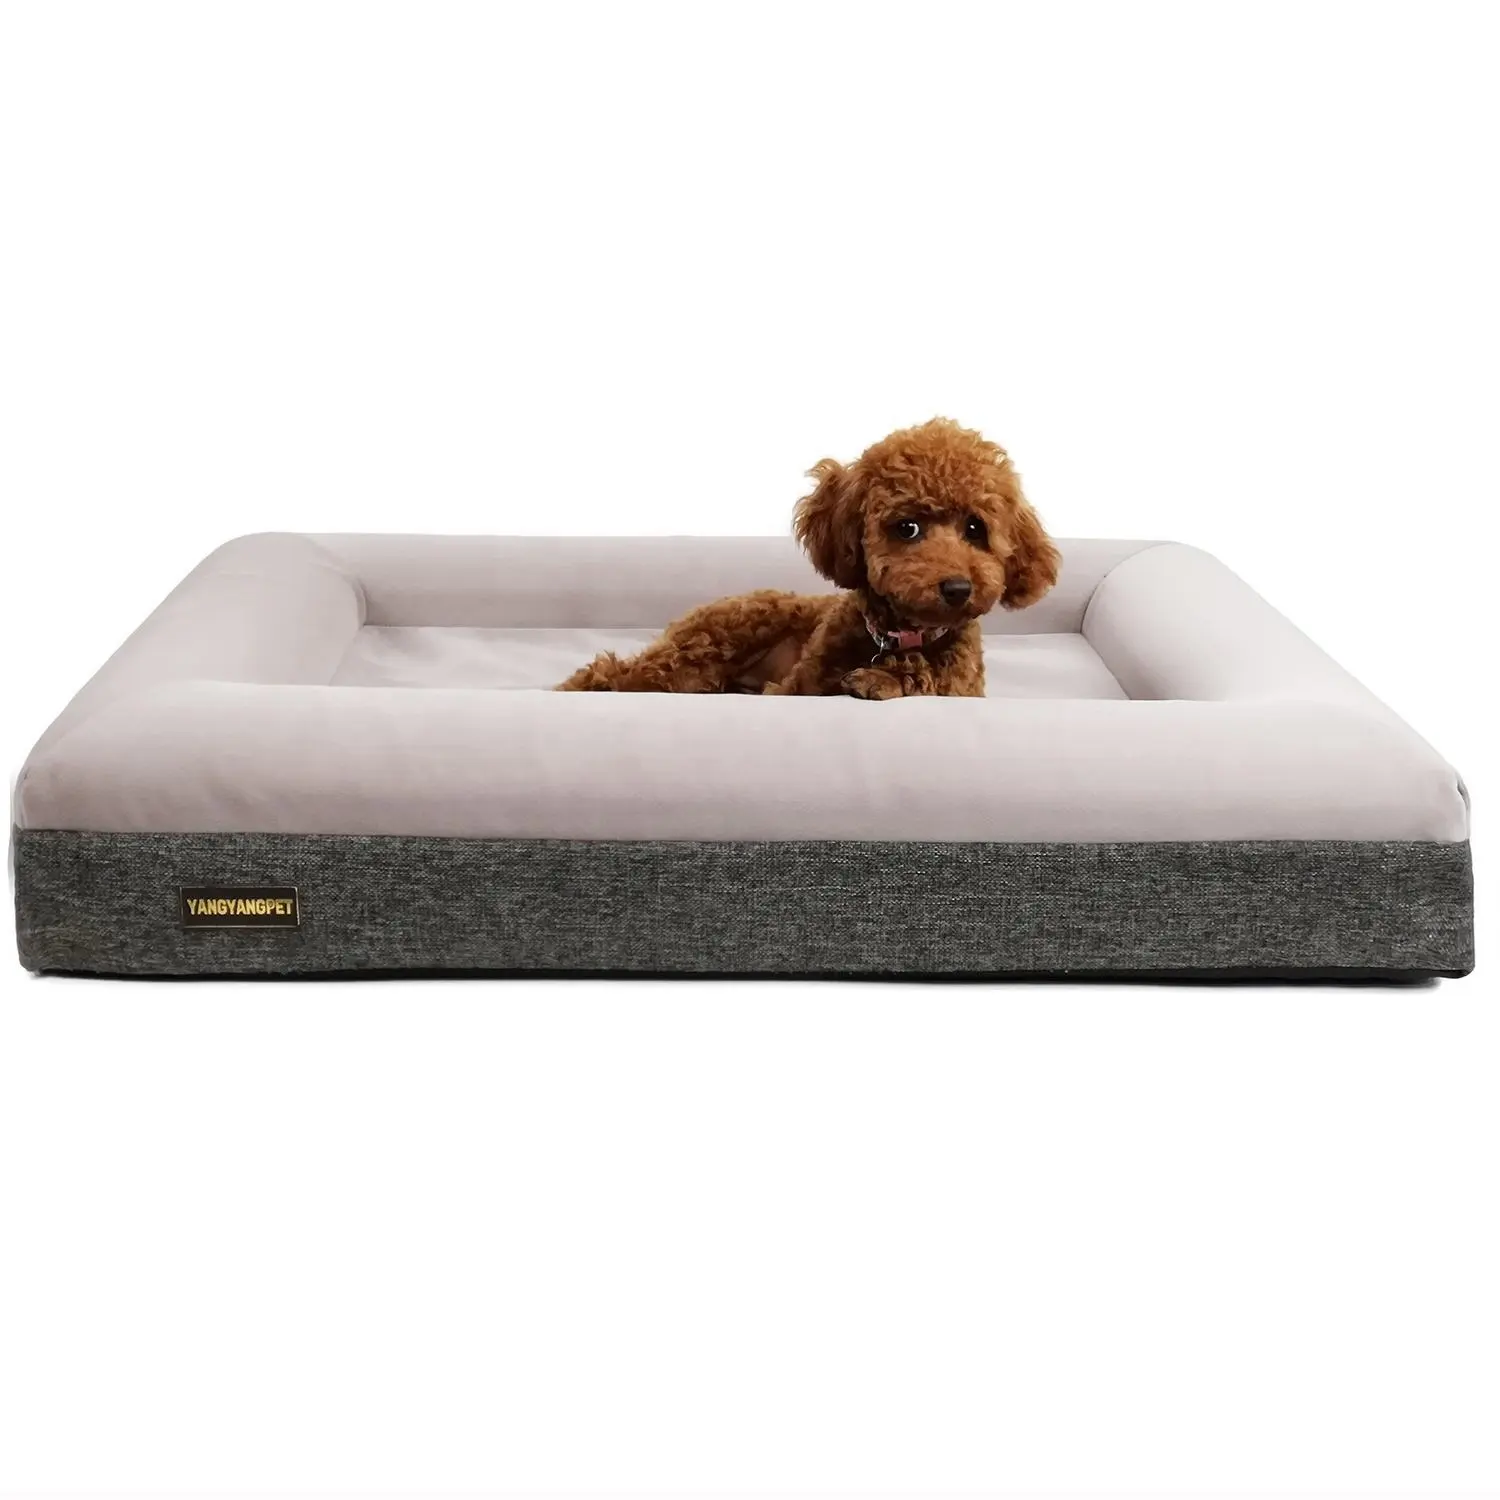 Hongju asiento de coche gigante personalizado para perros pequeños moderno de moda Grande Mediano pequeño perro cama de coche cama para mascotas estera suave acogedor y esponjoso colchón para mascotas